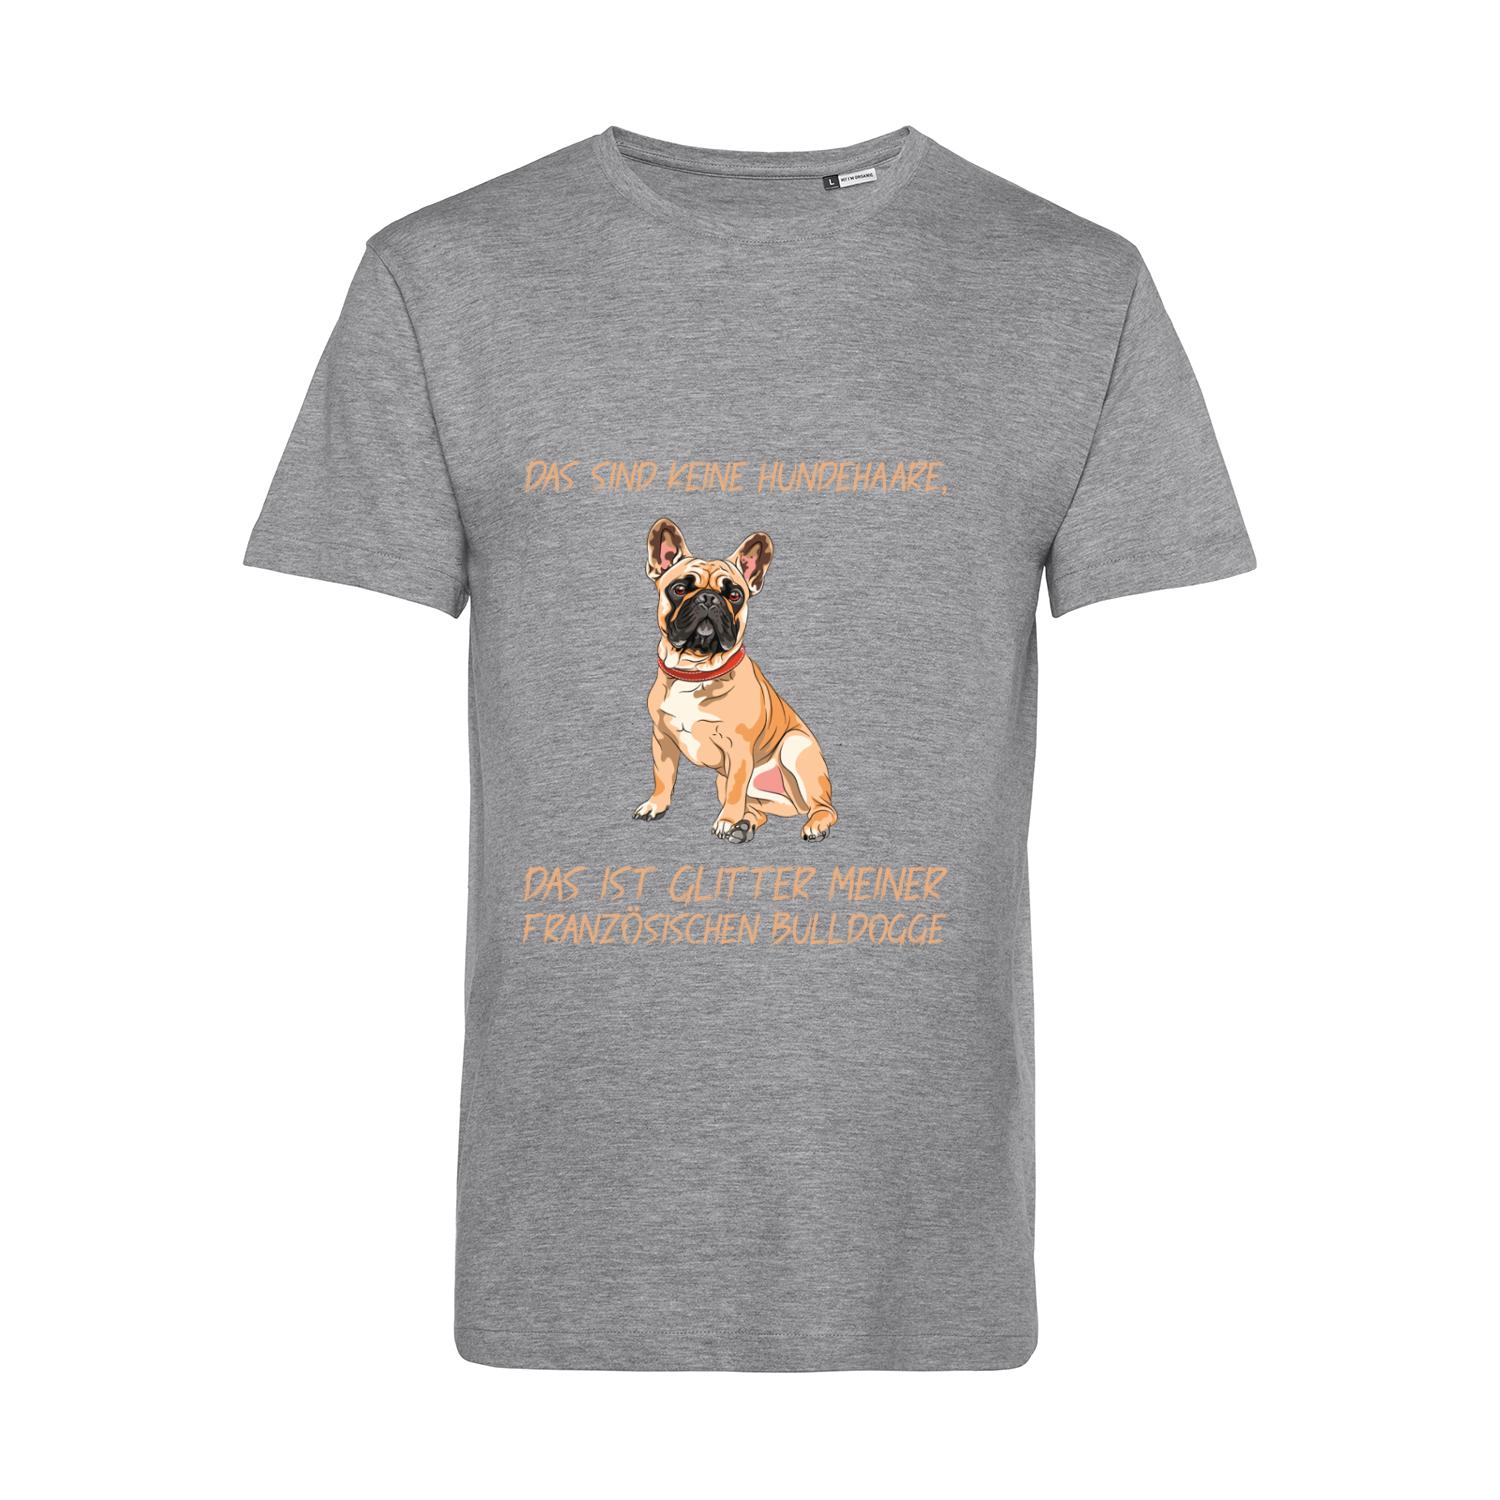 Nachhaltiges T-Shirt Herren Hunde - Französische Bulldogge - keine Hundehaare - Glitter